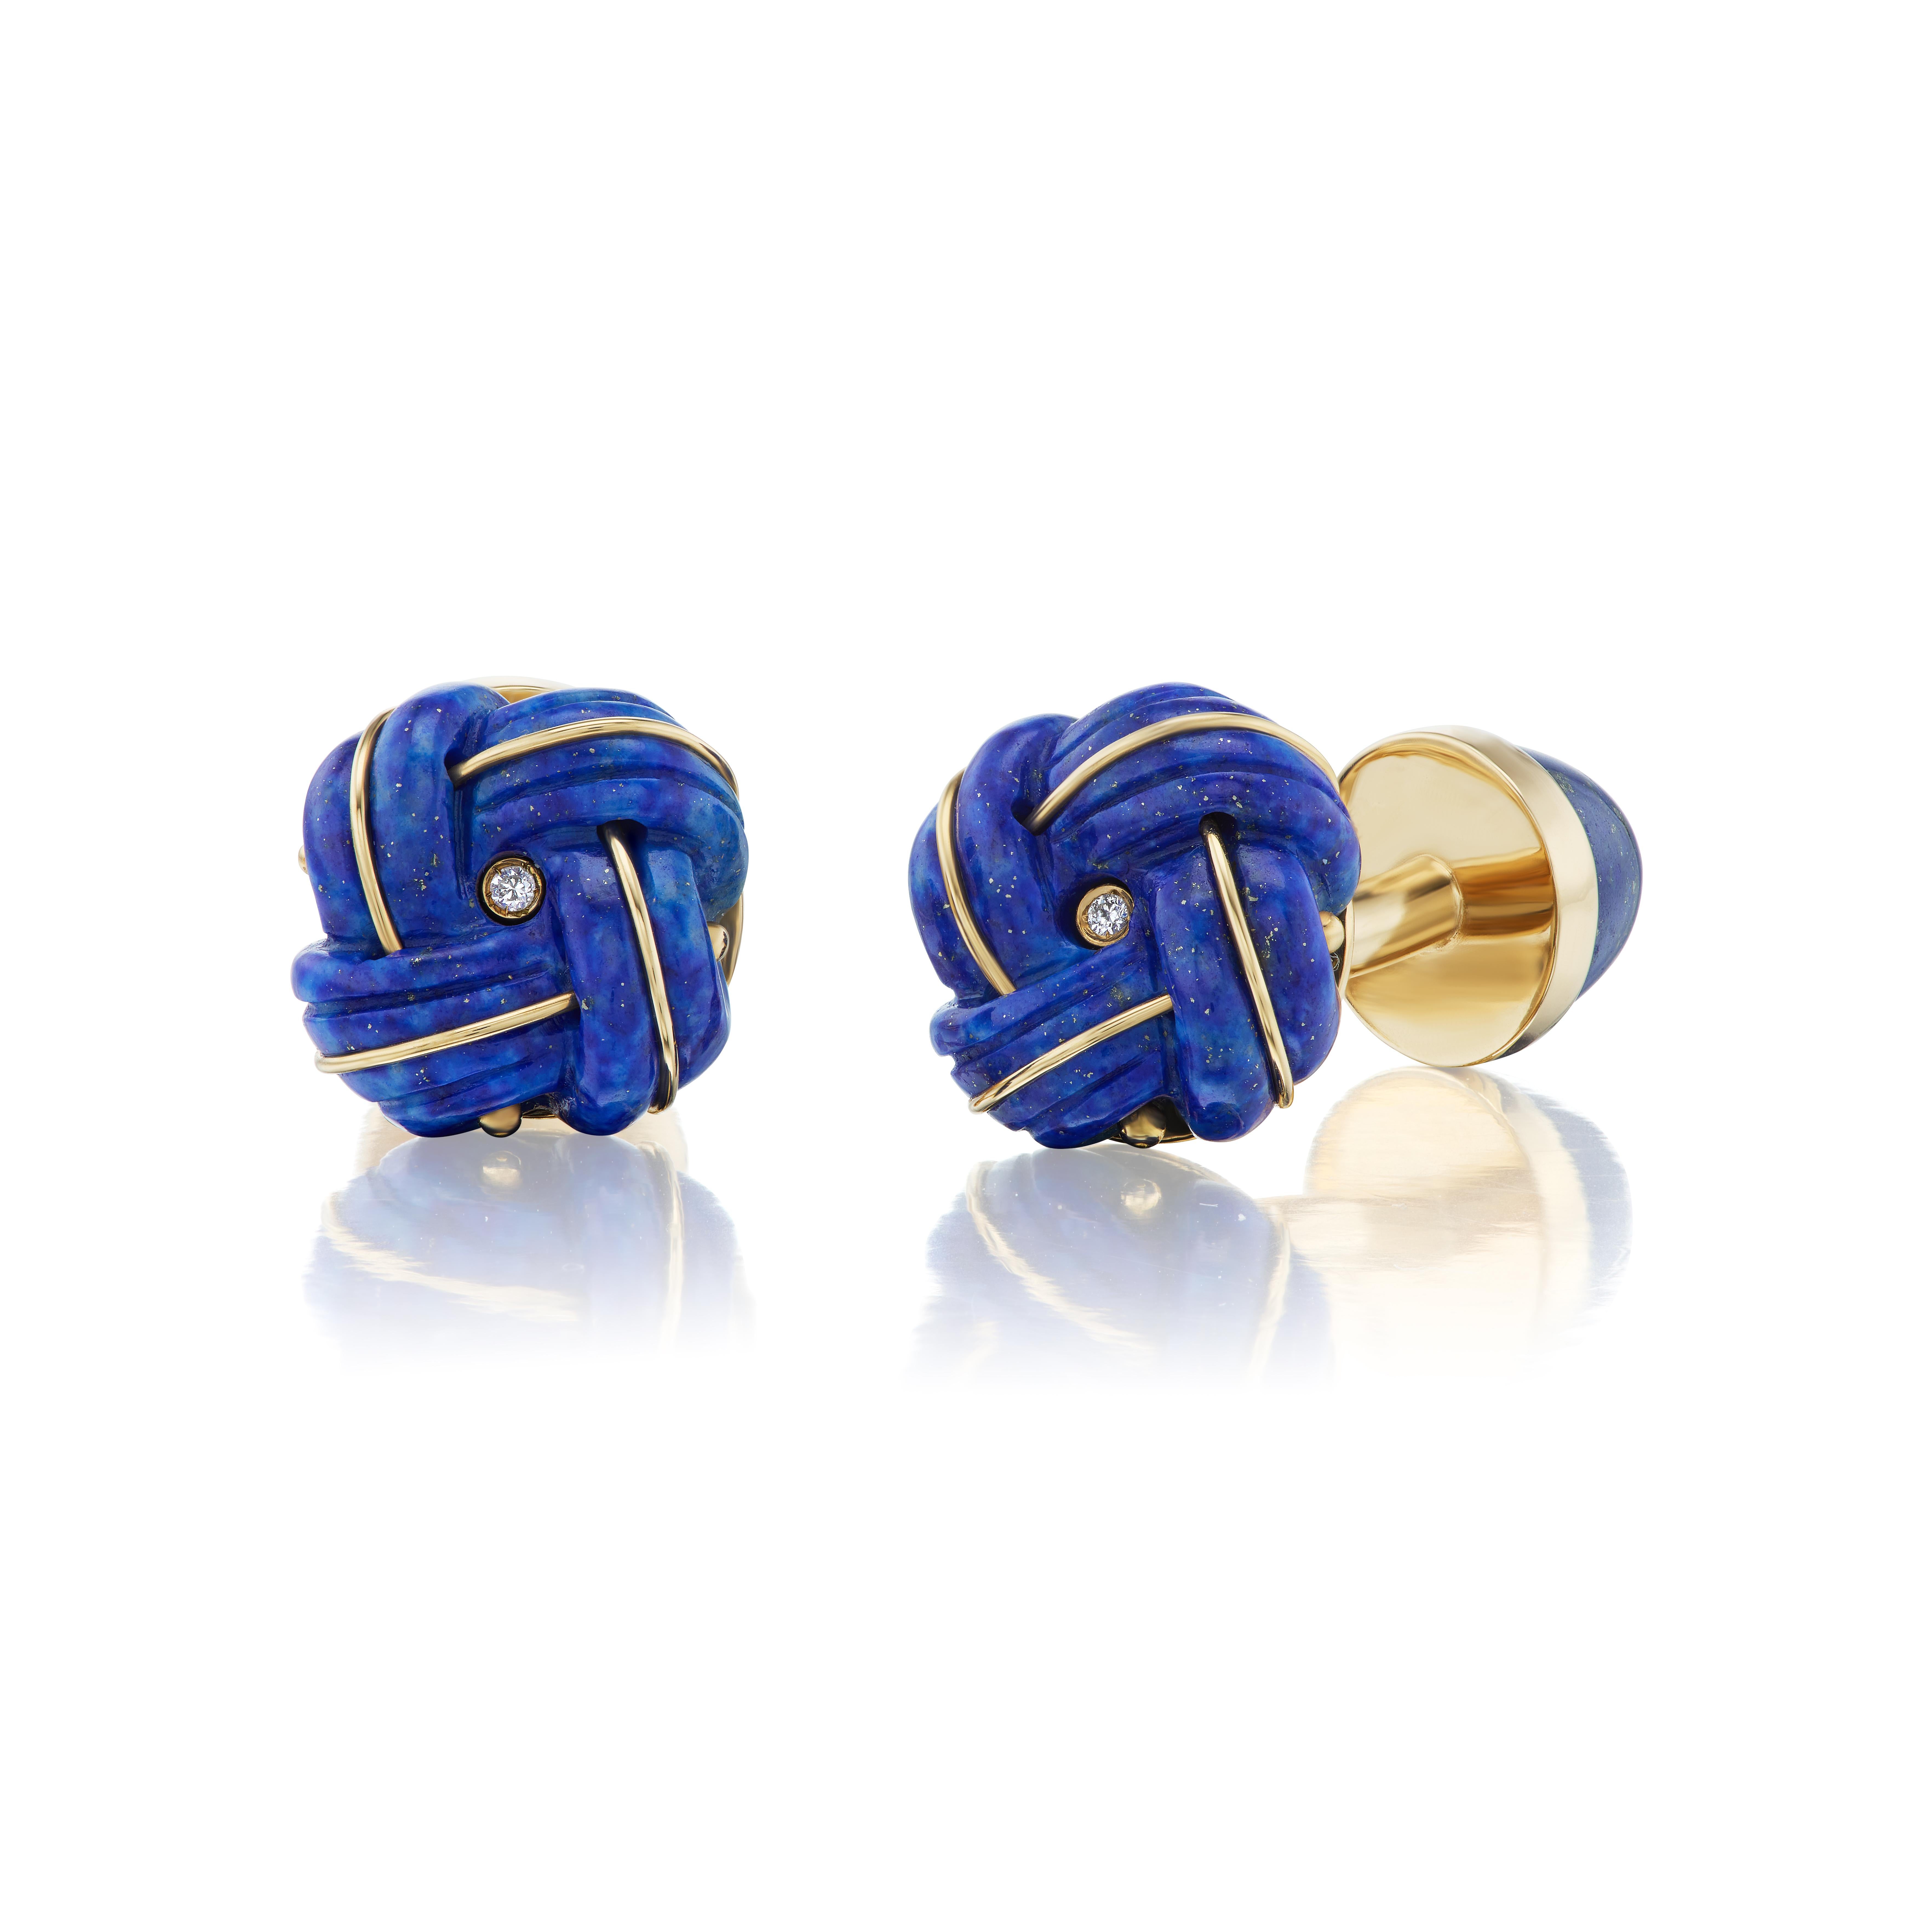 Le classique bouton de manchette à nœud, réinterprété en lapis-lazuli sculpté et discrètement rehaussé d'or et de diamants.  

Les boutons de manchette à nœud remontent au début du XXe siècle et les originaux ont été réalisés en soie par le